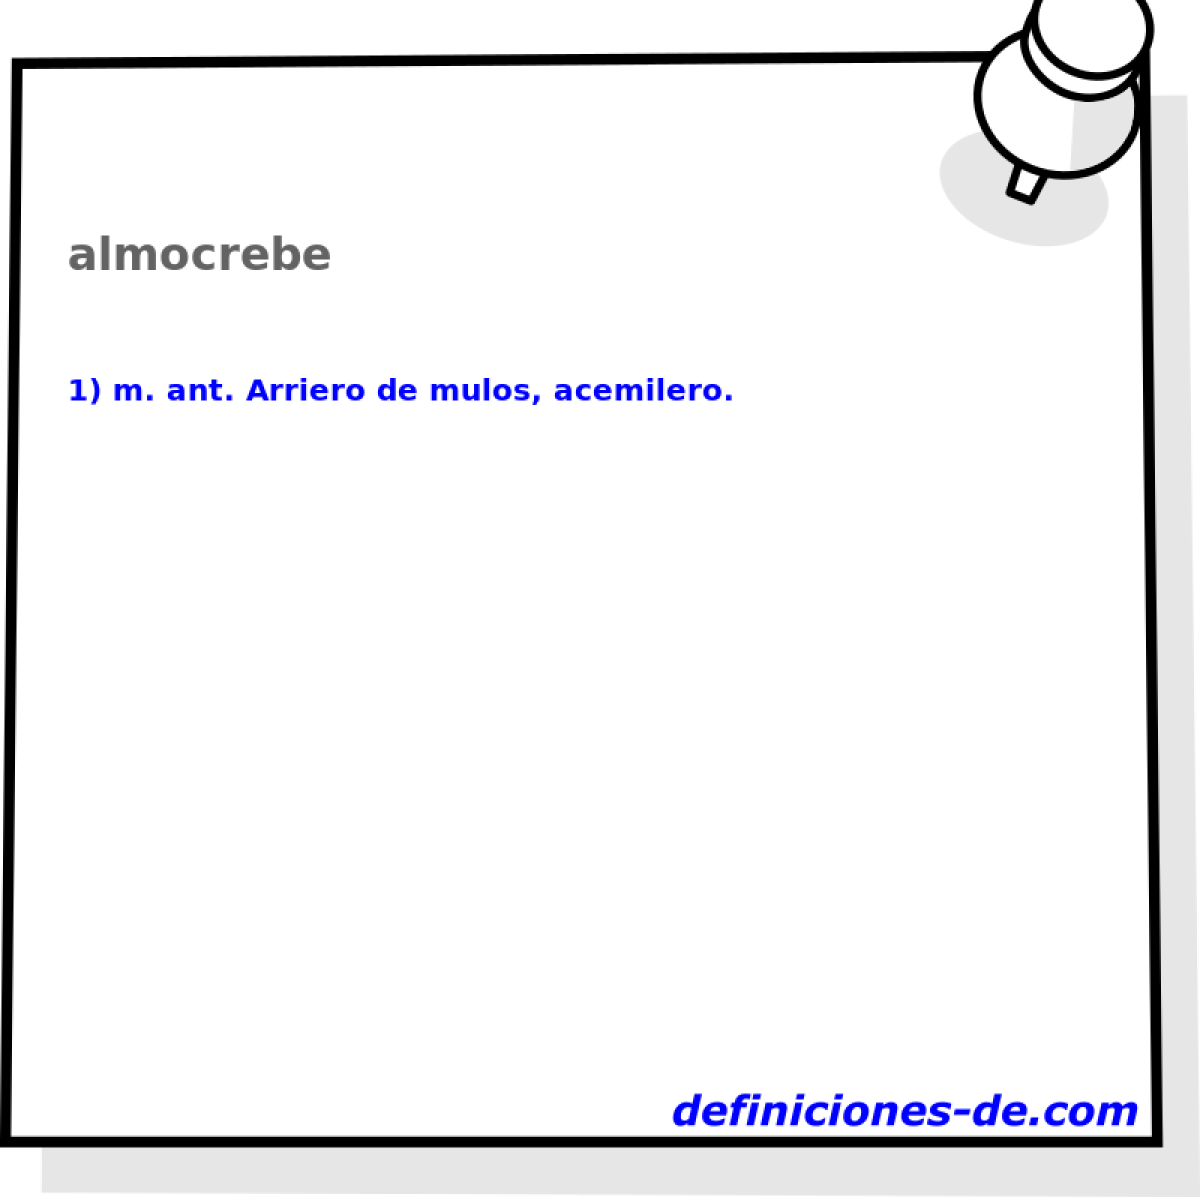 almocrebe 